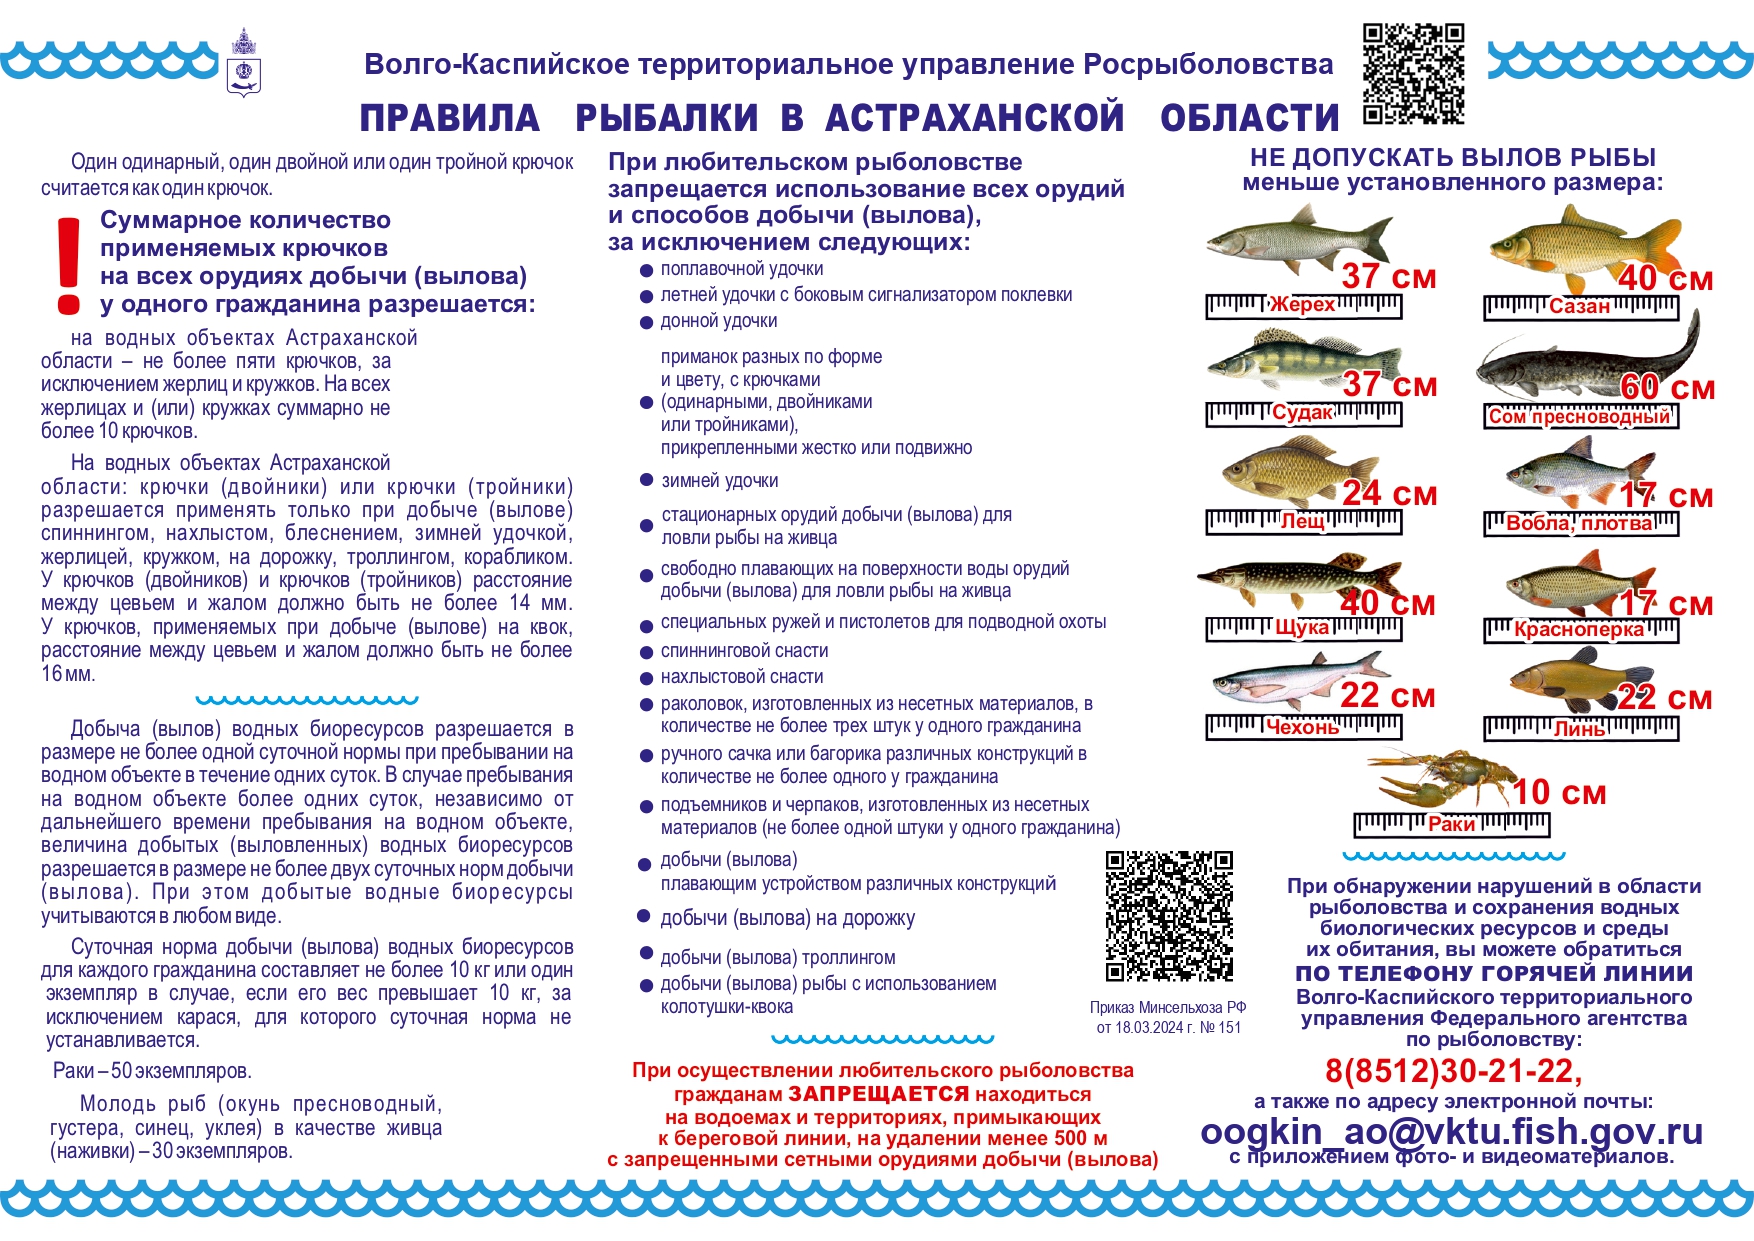 Памятка - правил рыбалки в Астраханской области